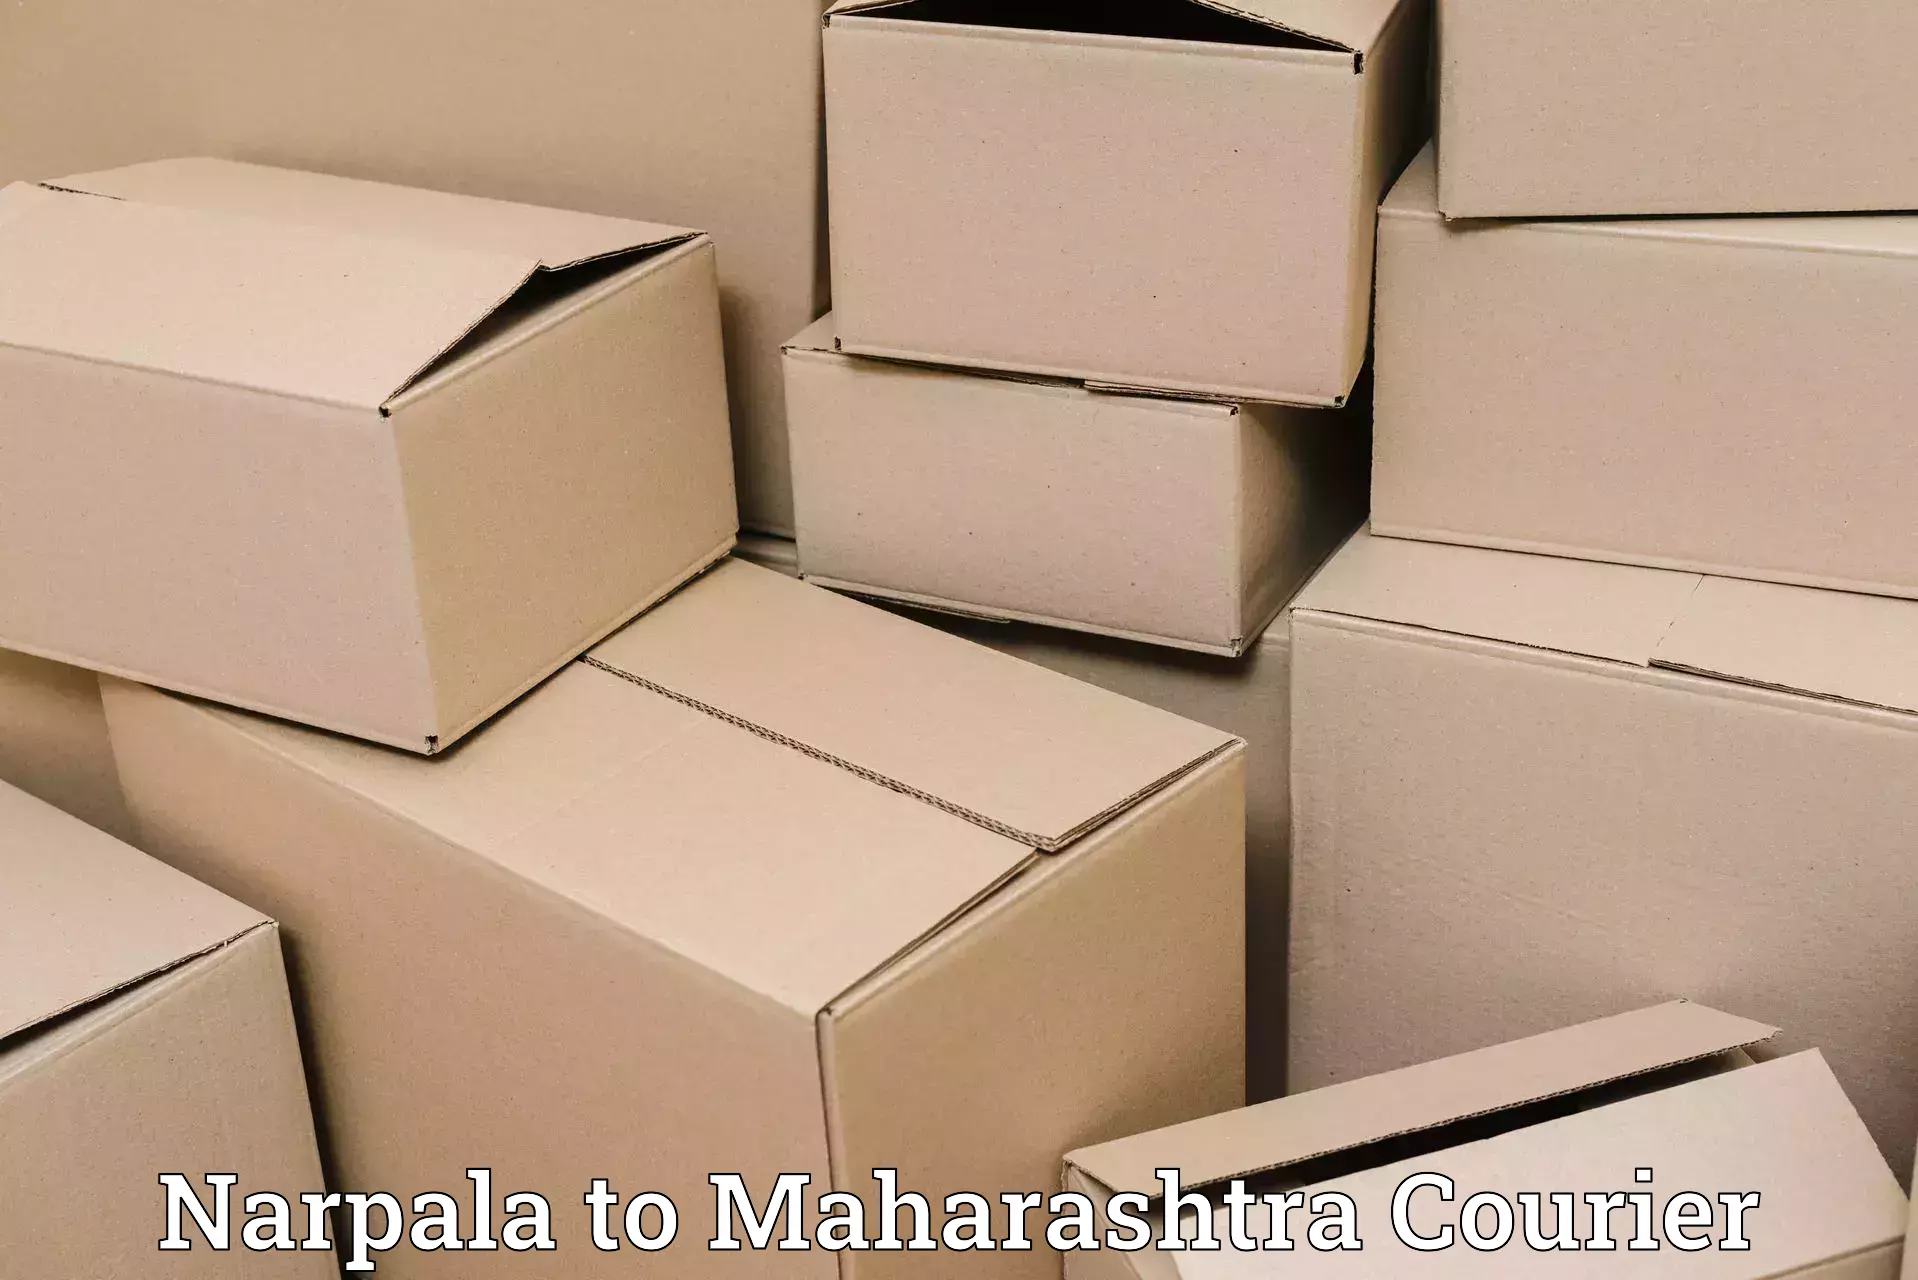 Ground shipping Narpala to Pandharpur